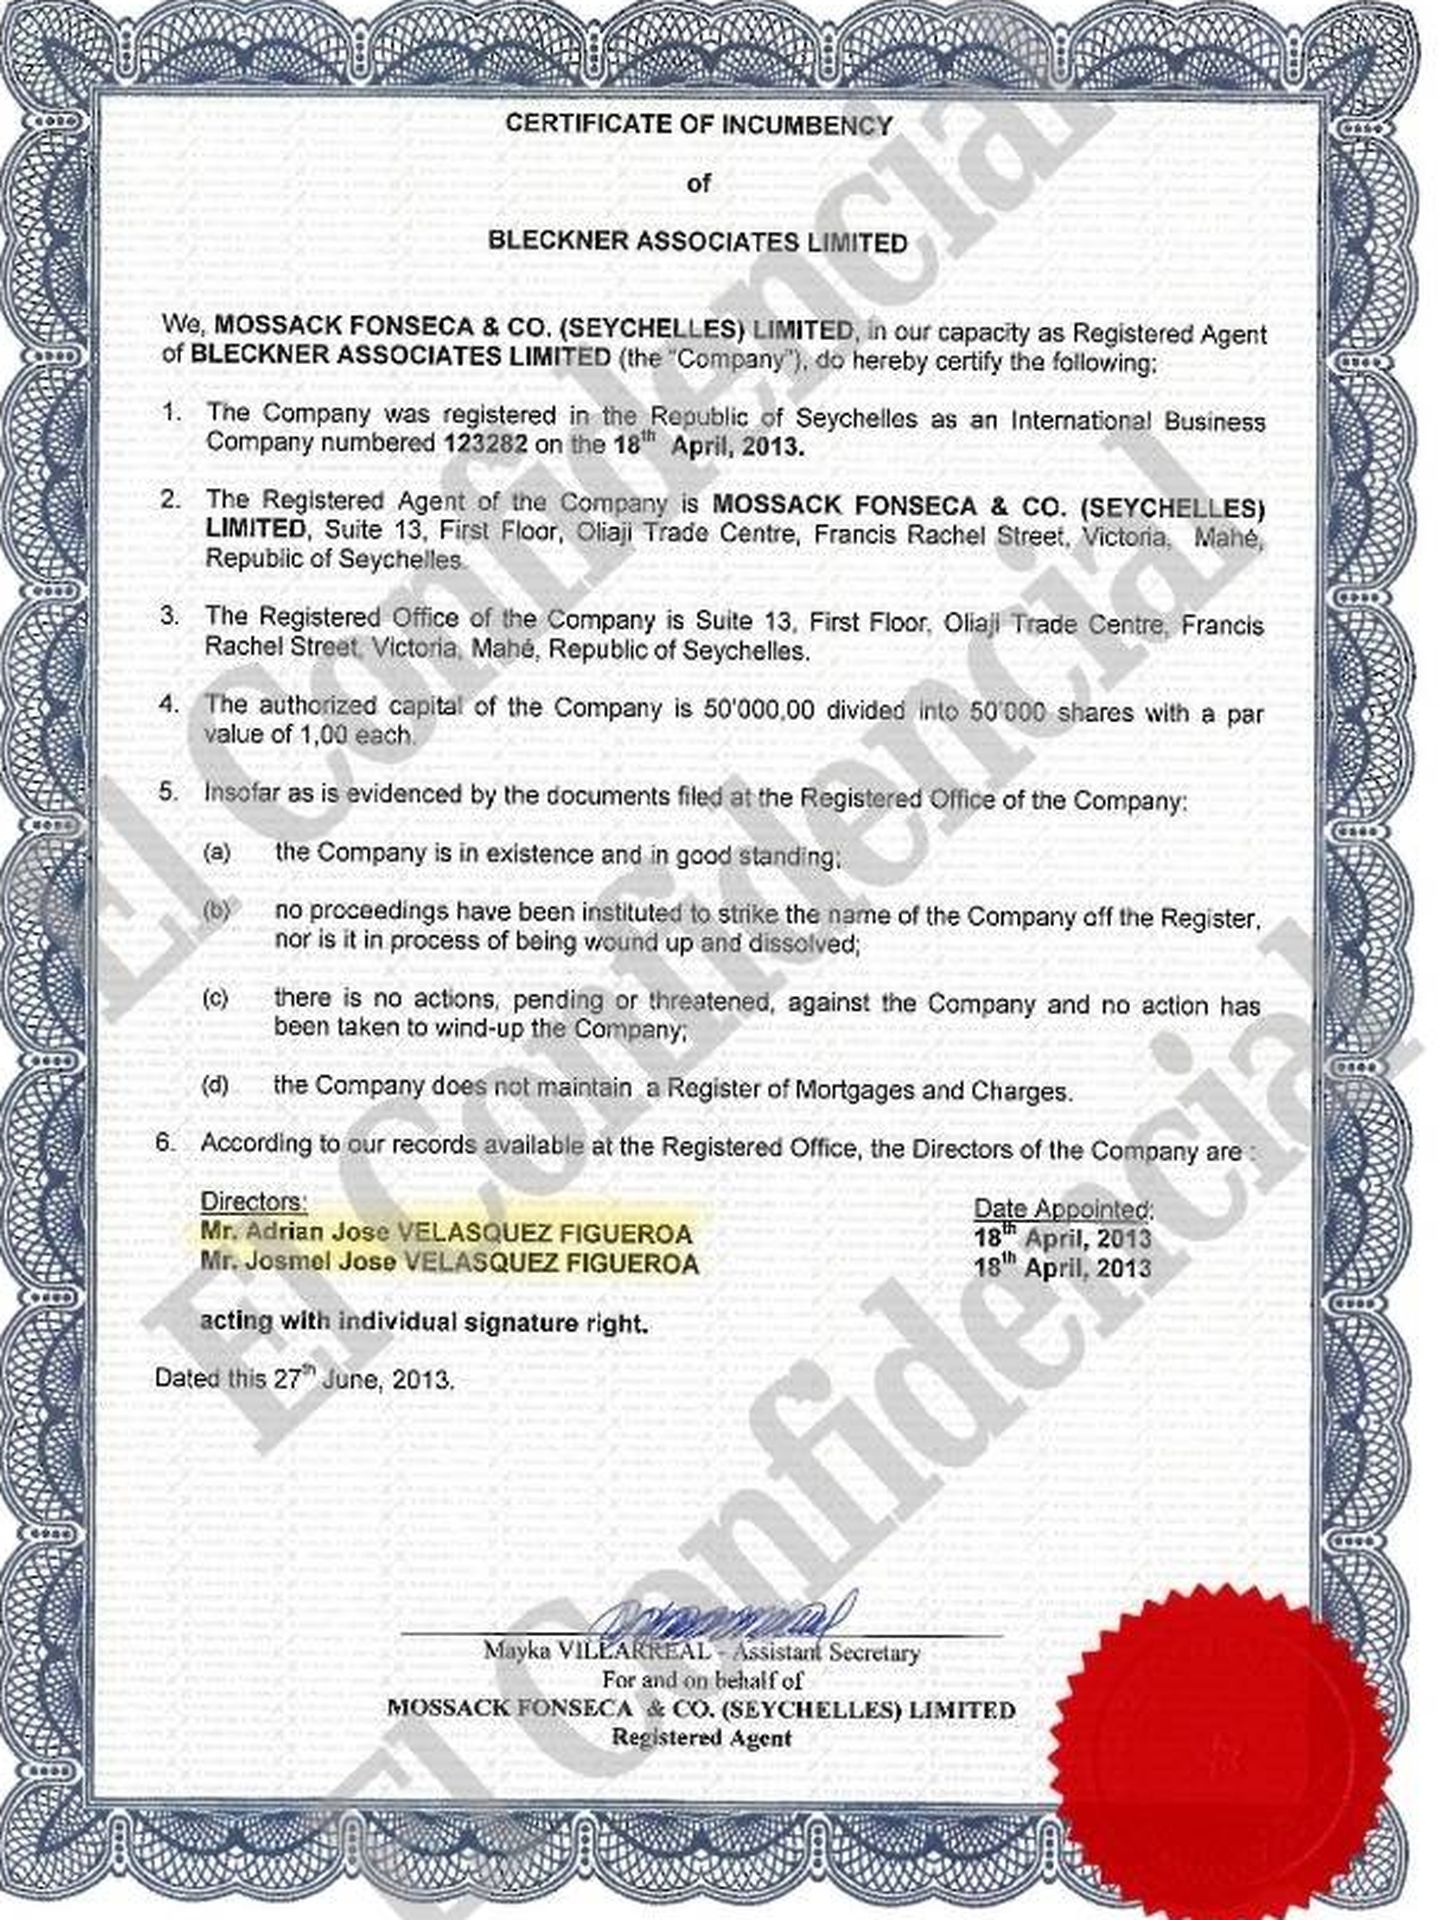 Constitución de Bleckner Associates en Seychelles por Mossack Fonseca.